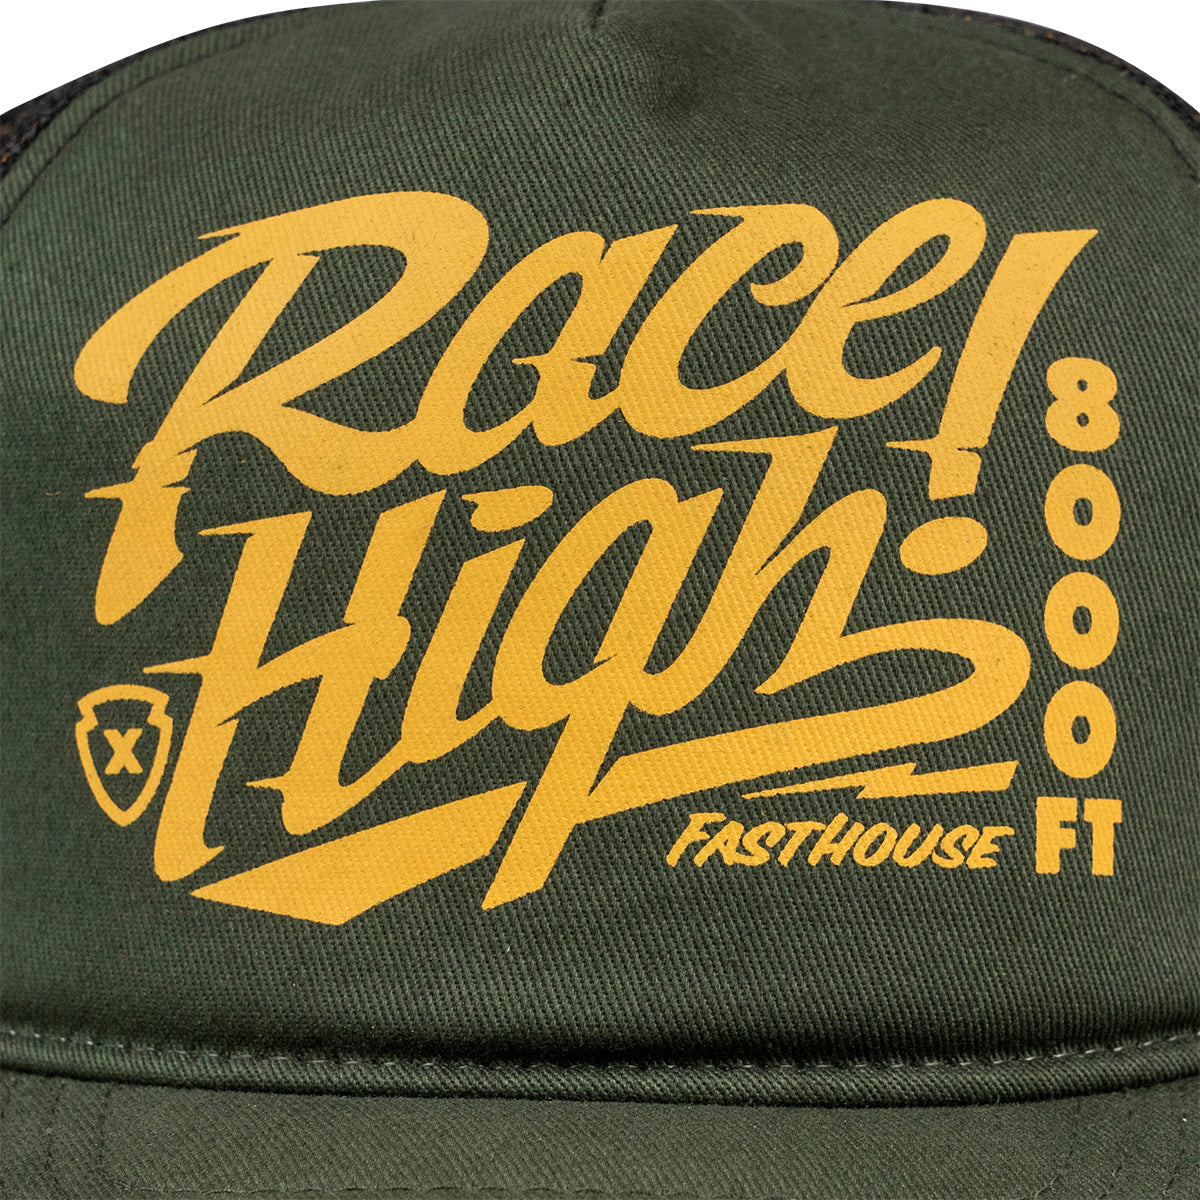 Mammoth Race High Trucker Hat - Green